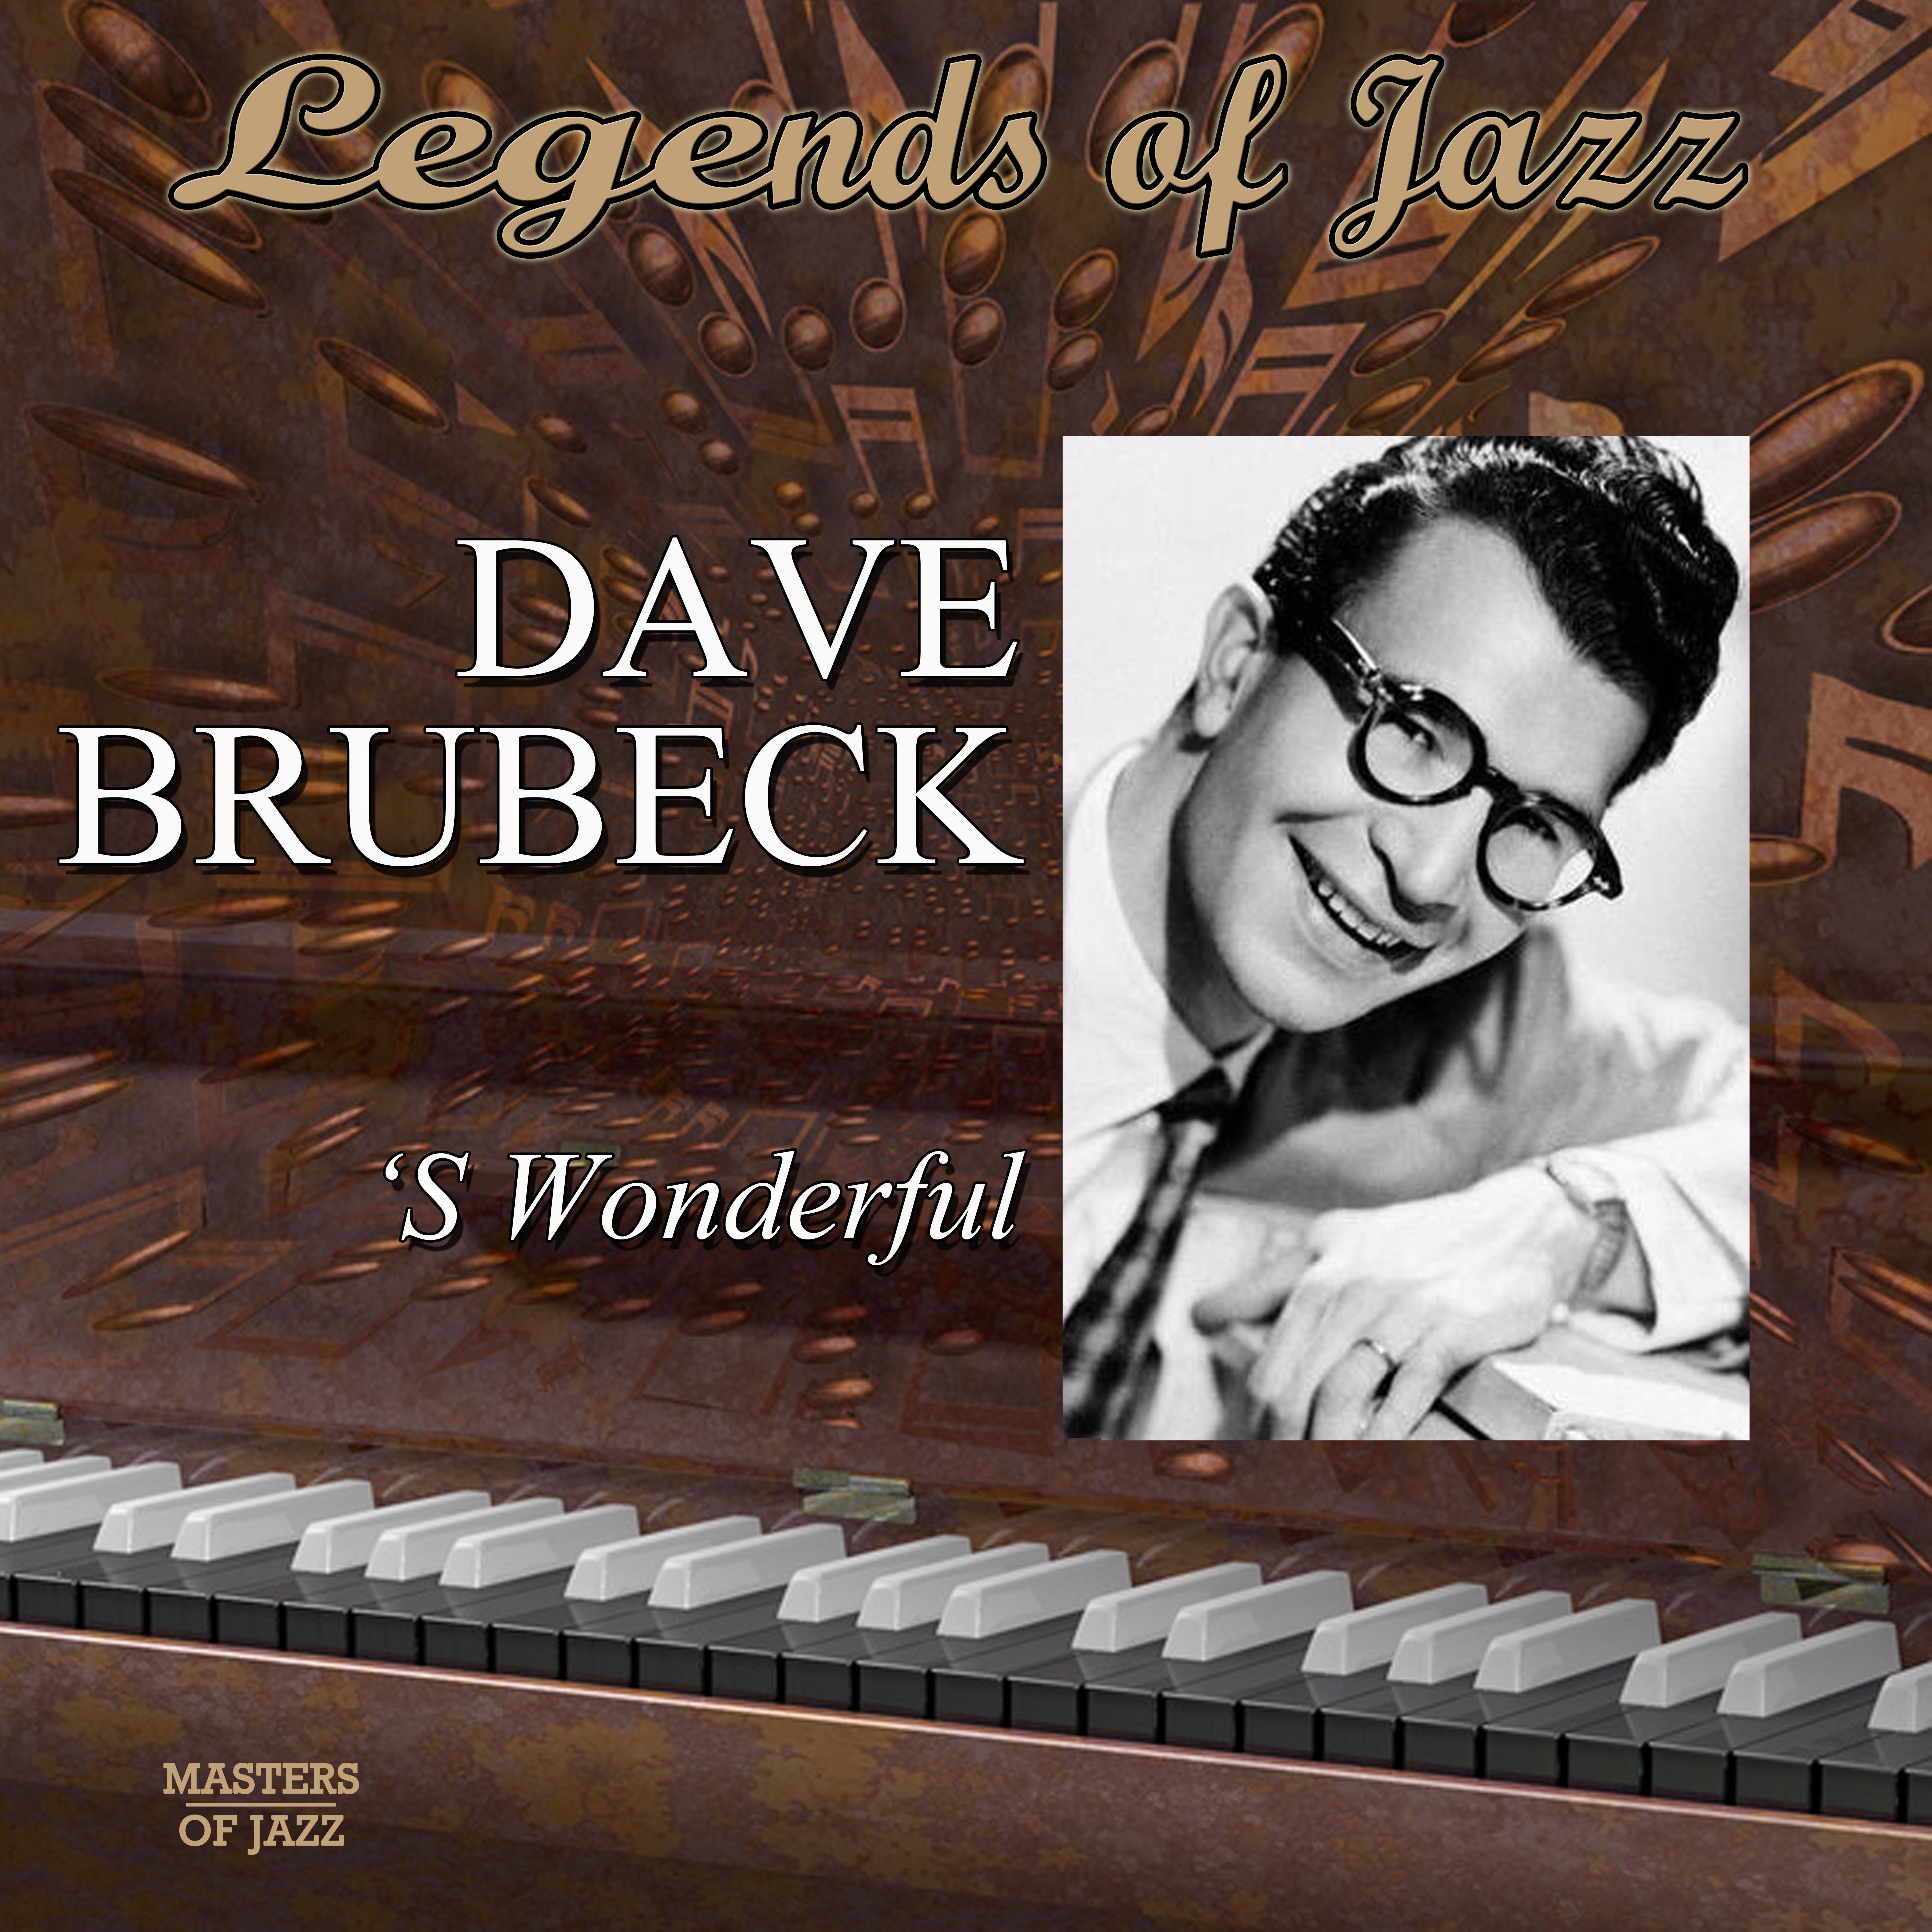 Legends Of Jazz: Dave Brubeck - S'Wonderful